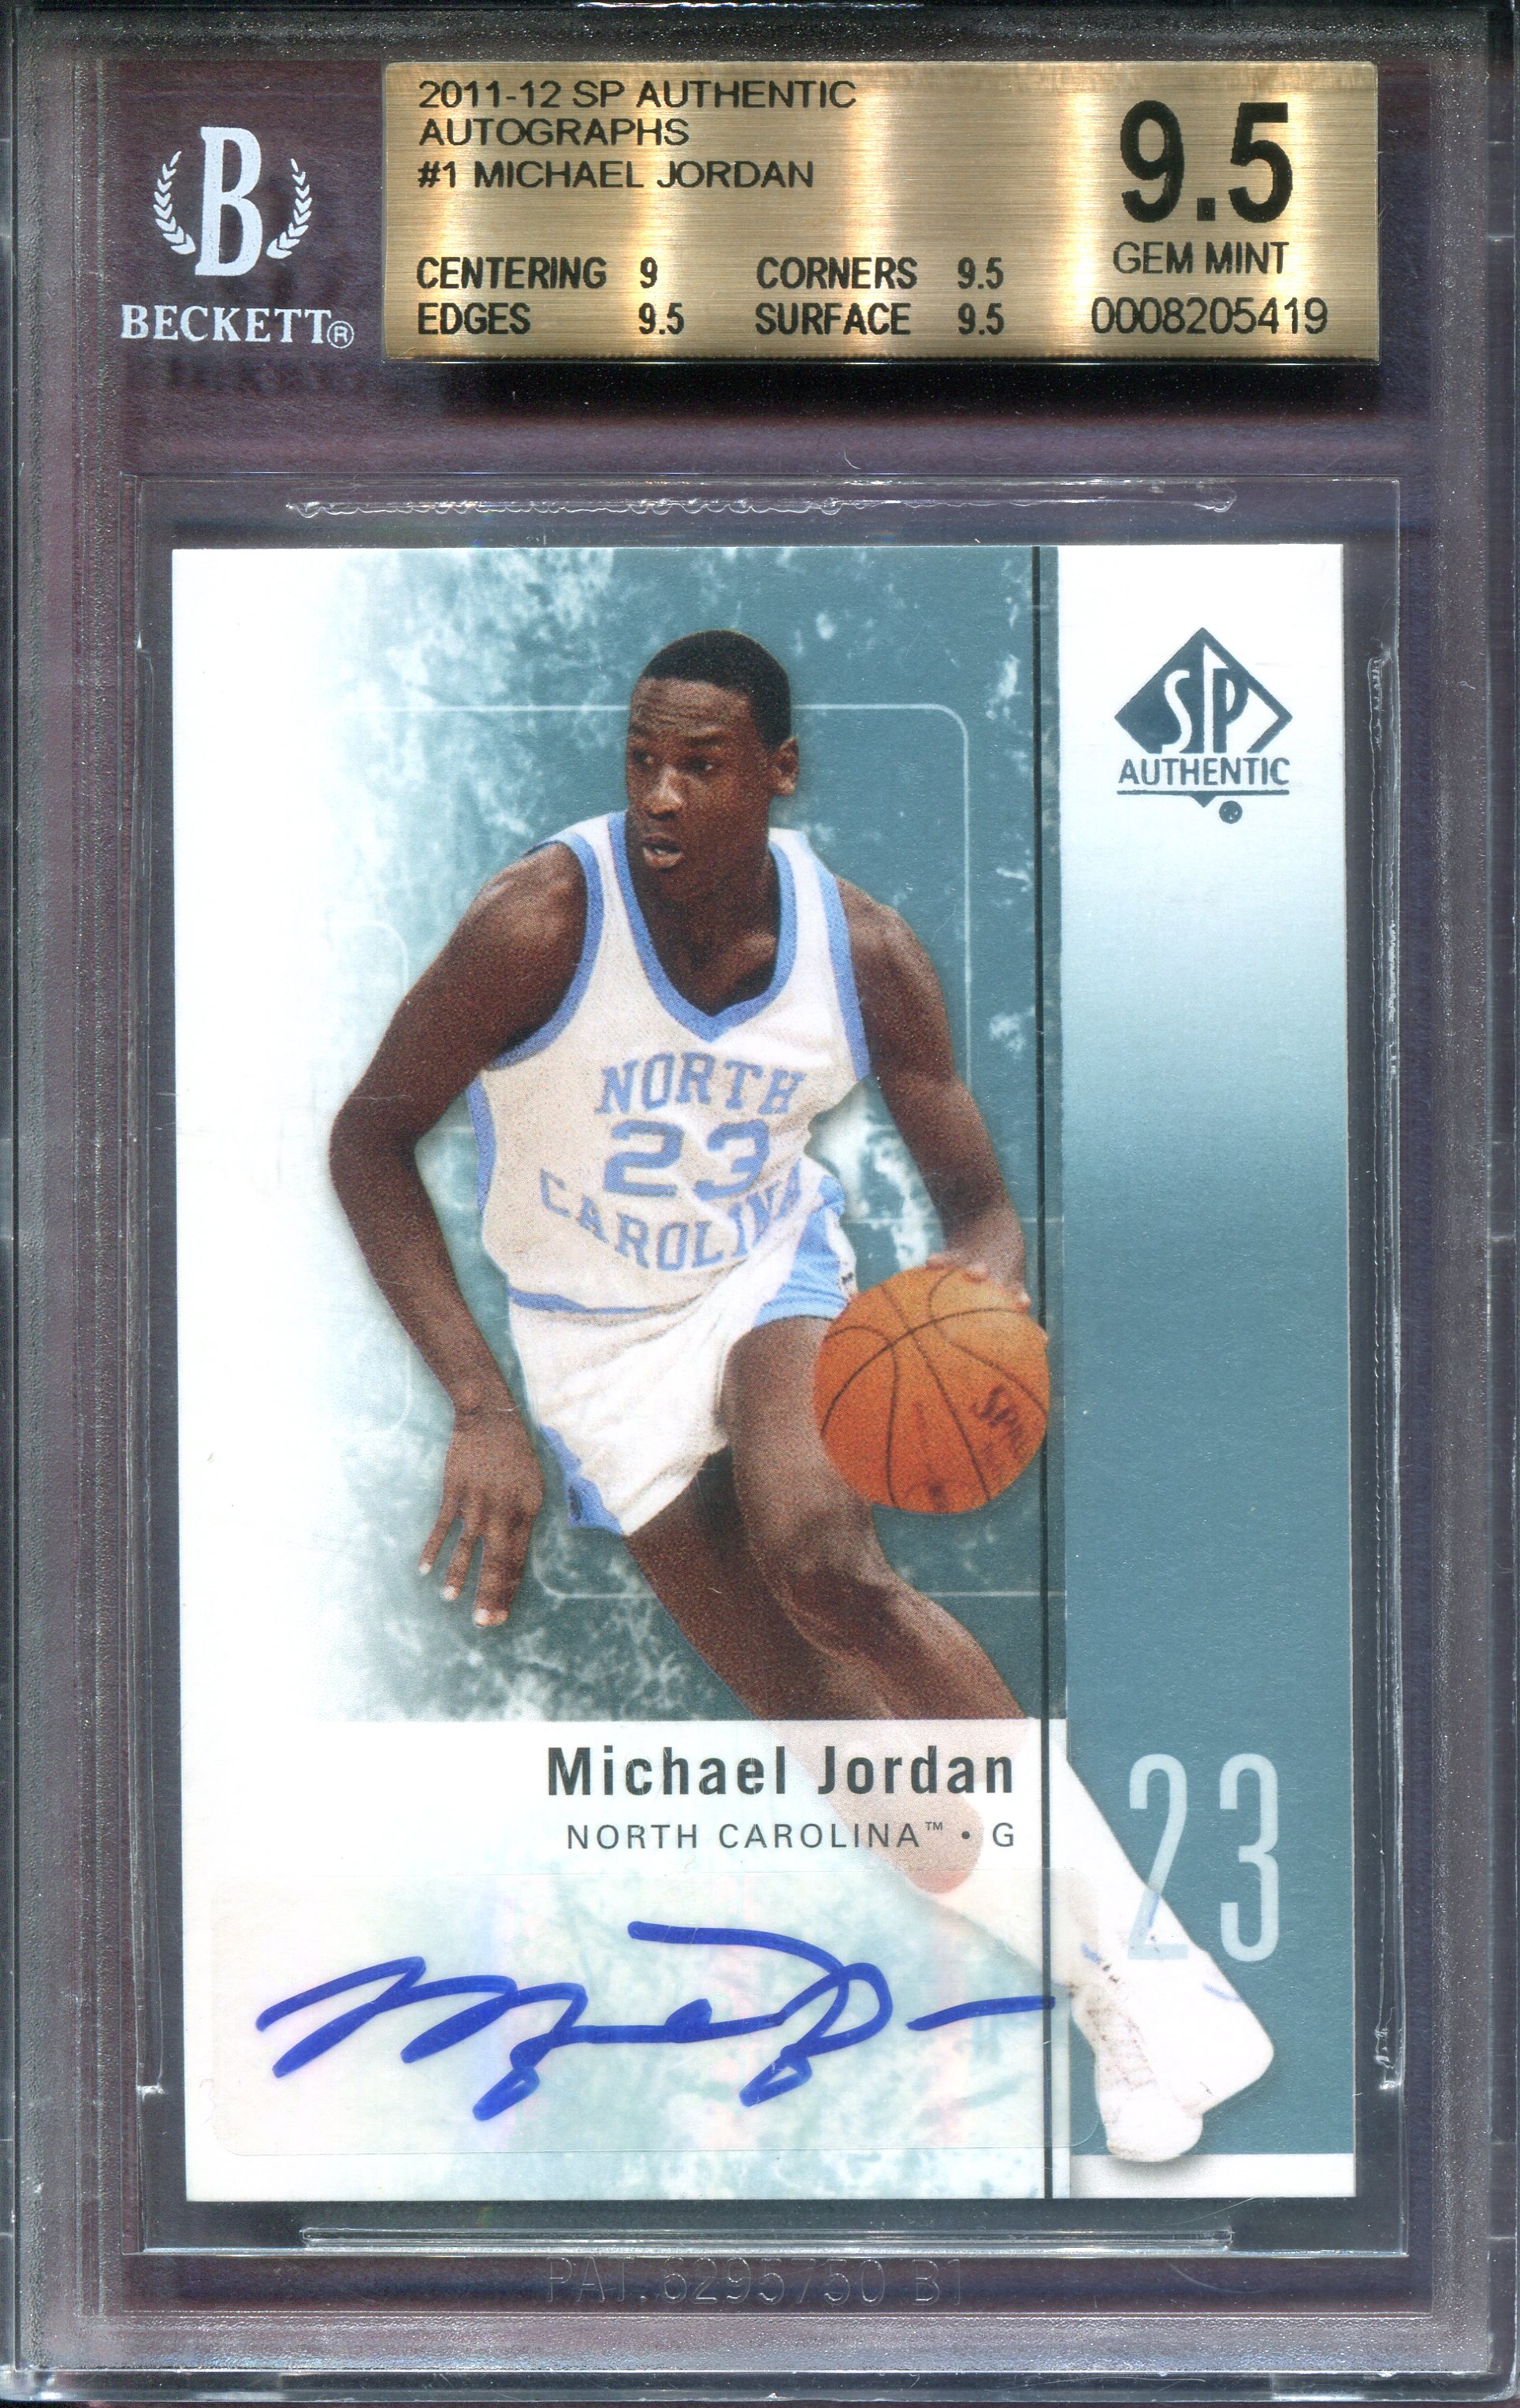 2013 SP Authentic Buyback Autograph Michael Jordan 1998 Sp Authentic 1/1